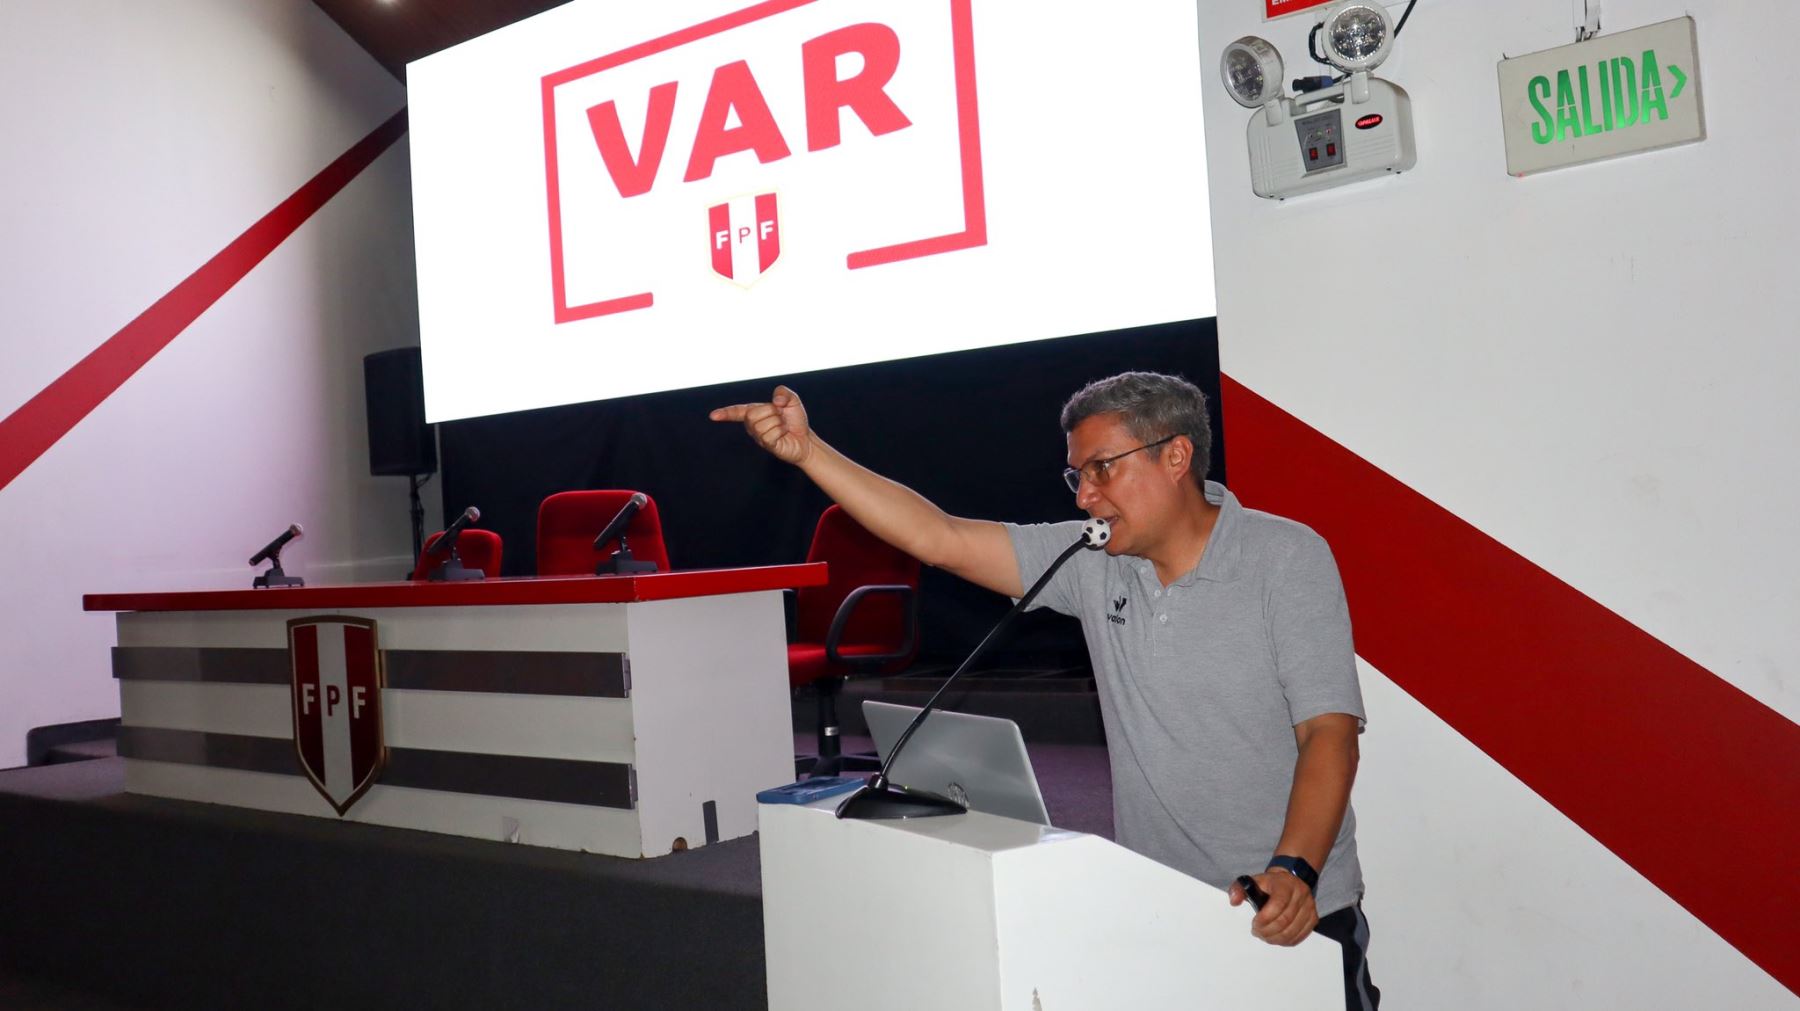 Se inició las reuniones para implementar el videoarbitraje en el fútbol peruano